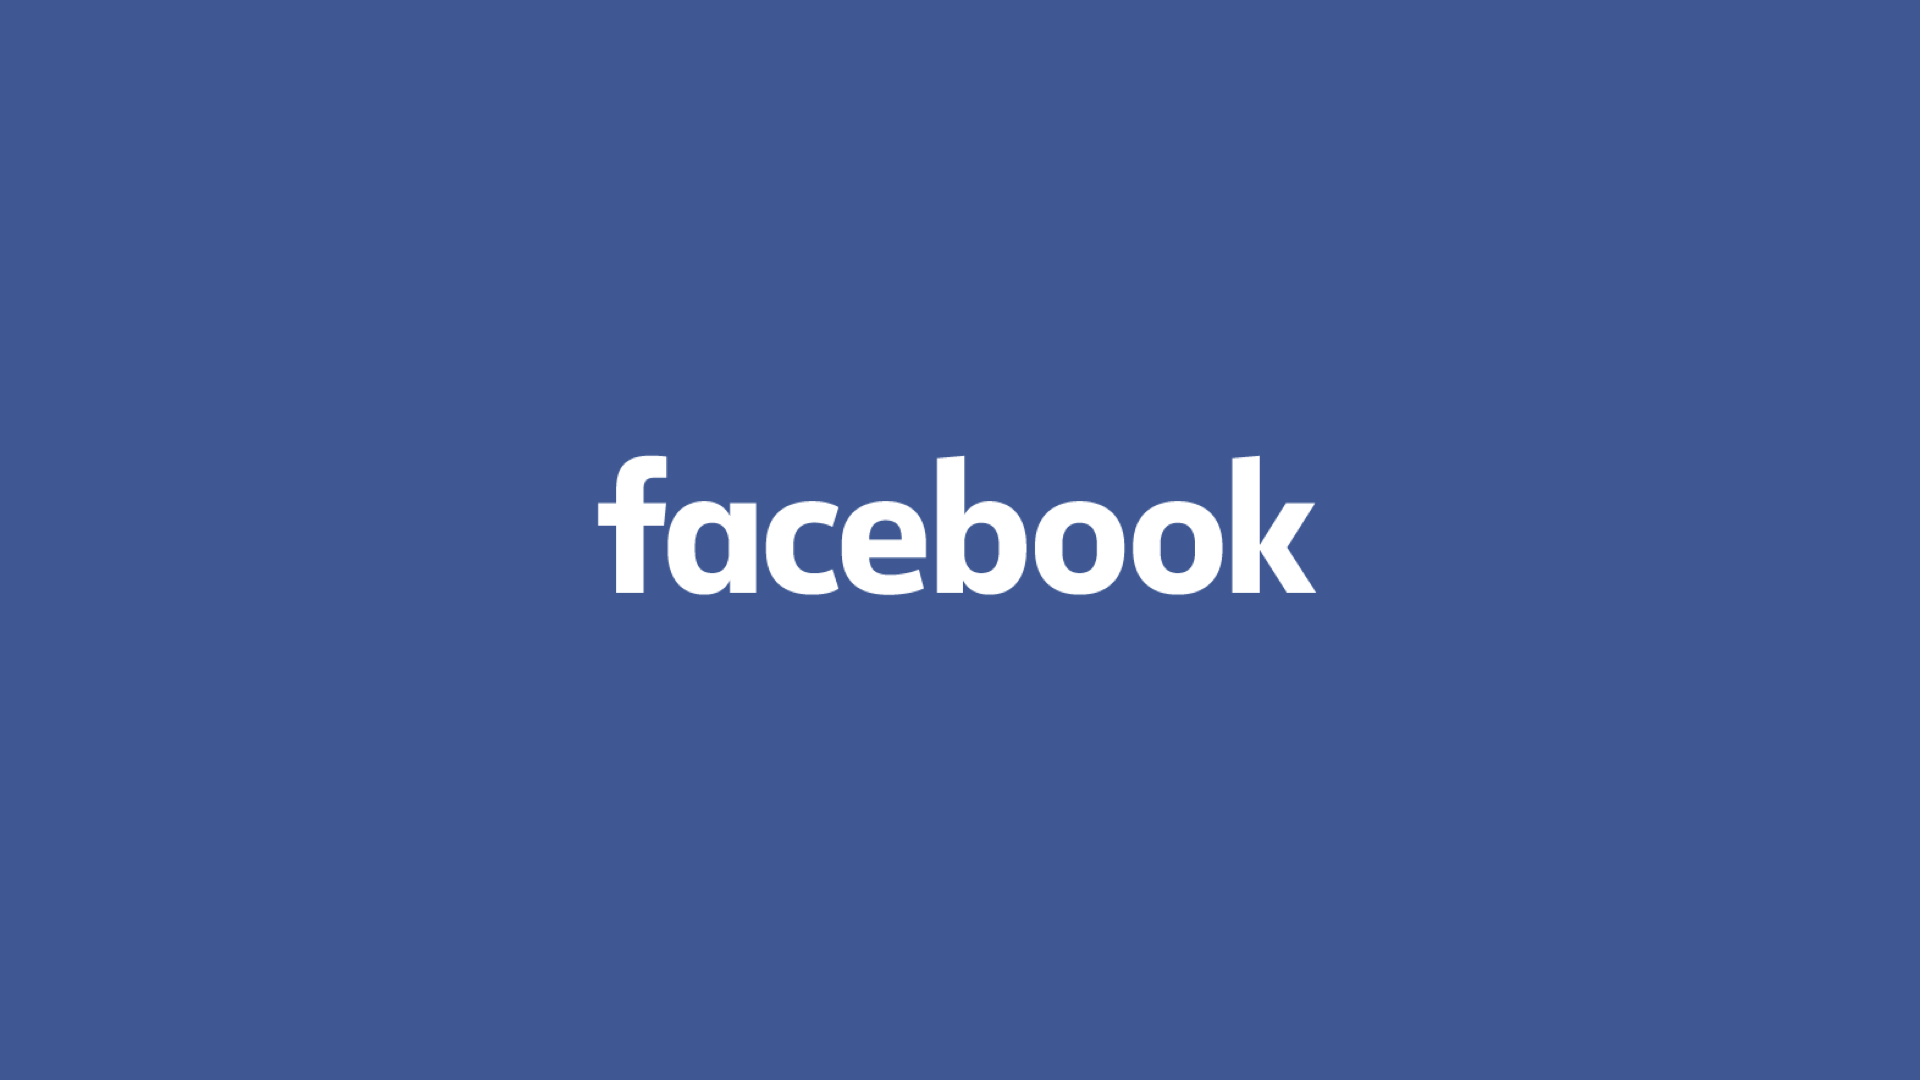 Facebook Girişi Nasıl Yapılır? Facebook'a Nasıl Kayıt Olunur?